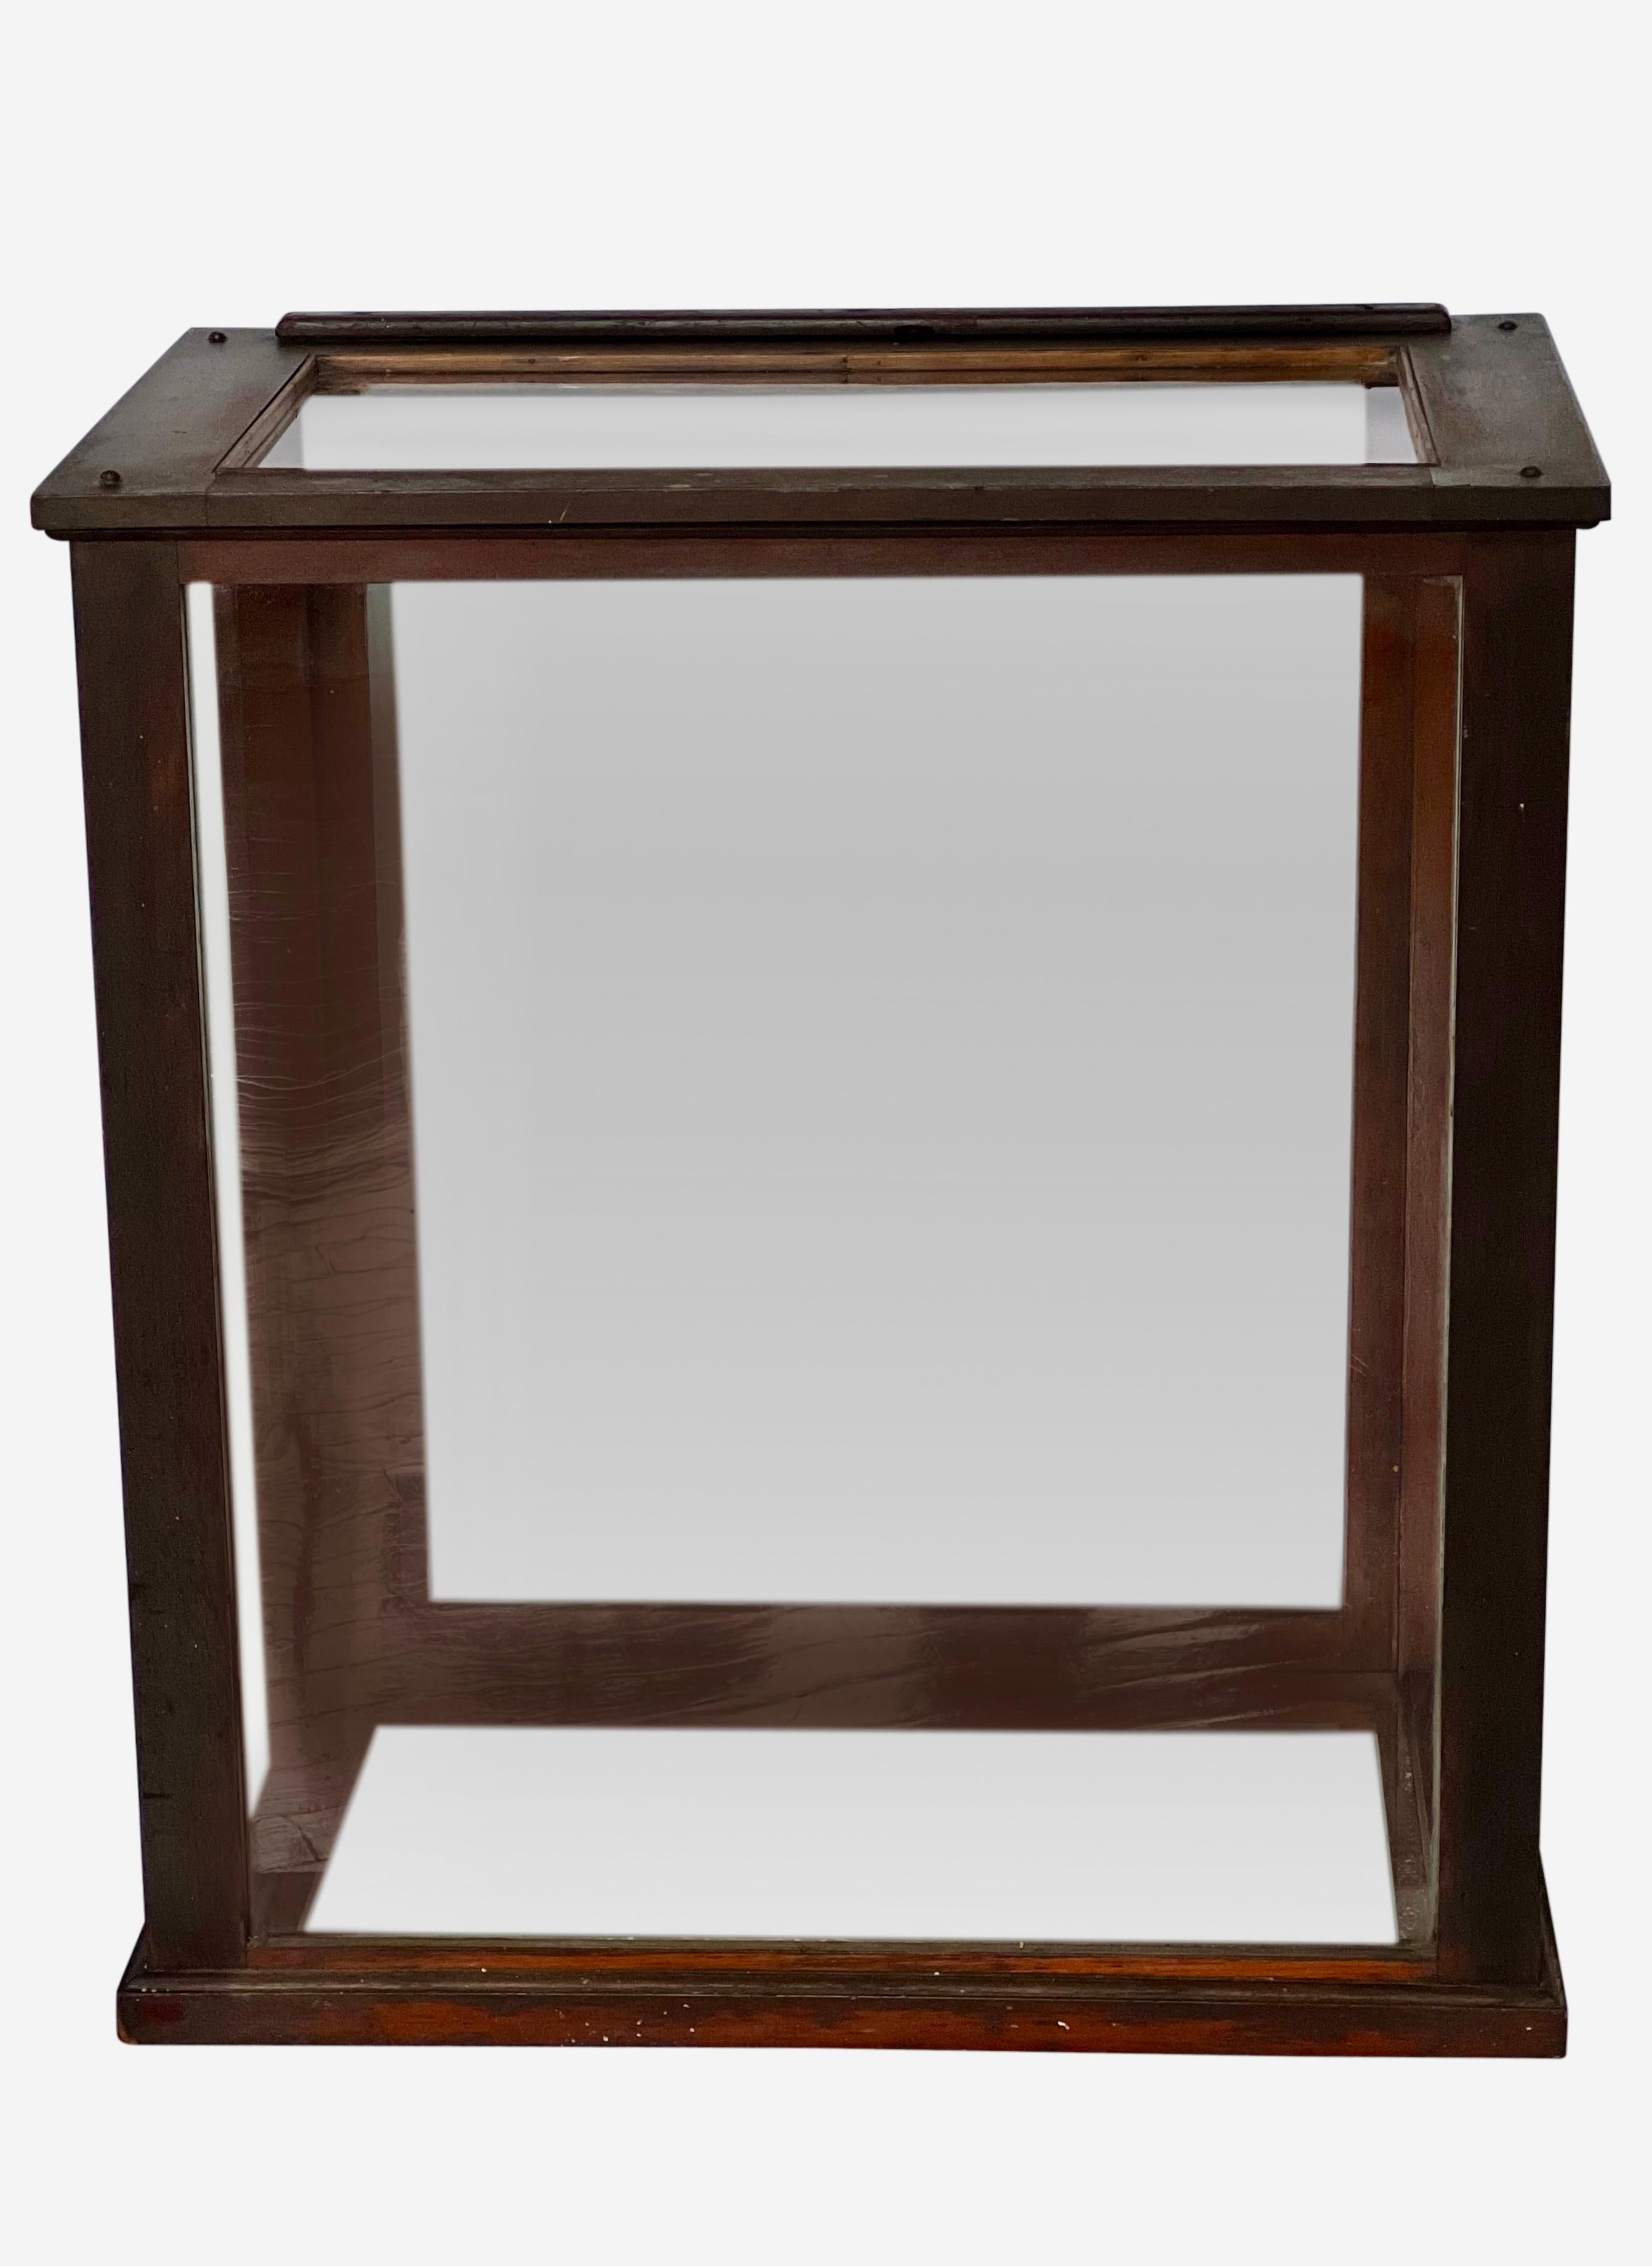 Antike Tischvitrine aus Mahagoni, England, um 1900.

Diese wunderbare sechsseitige Glasvitrine verfügt über ein vertikales Schiebepaneel auf der Rückseite. Das Originalglas und der Mahagoniholzrahmen sind in gutem Zustand. Das schlichte Design mit